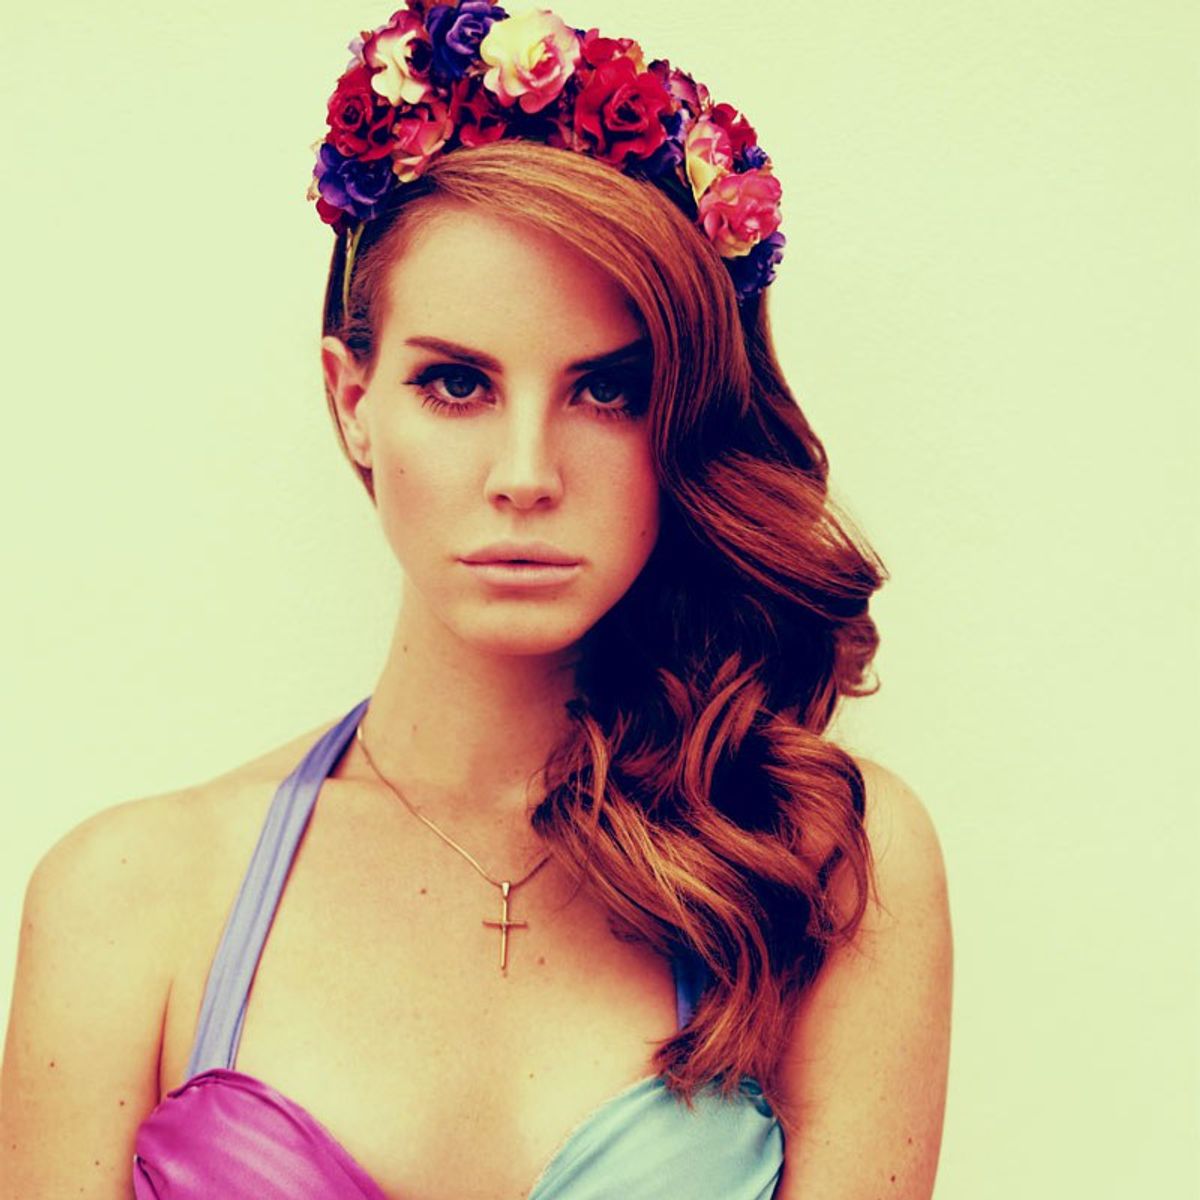 Loving Lana Del Rey